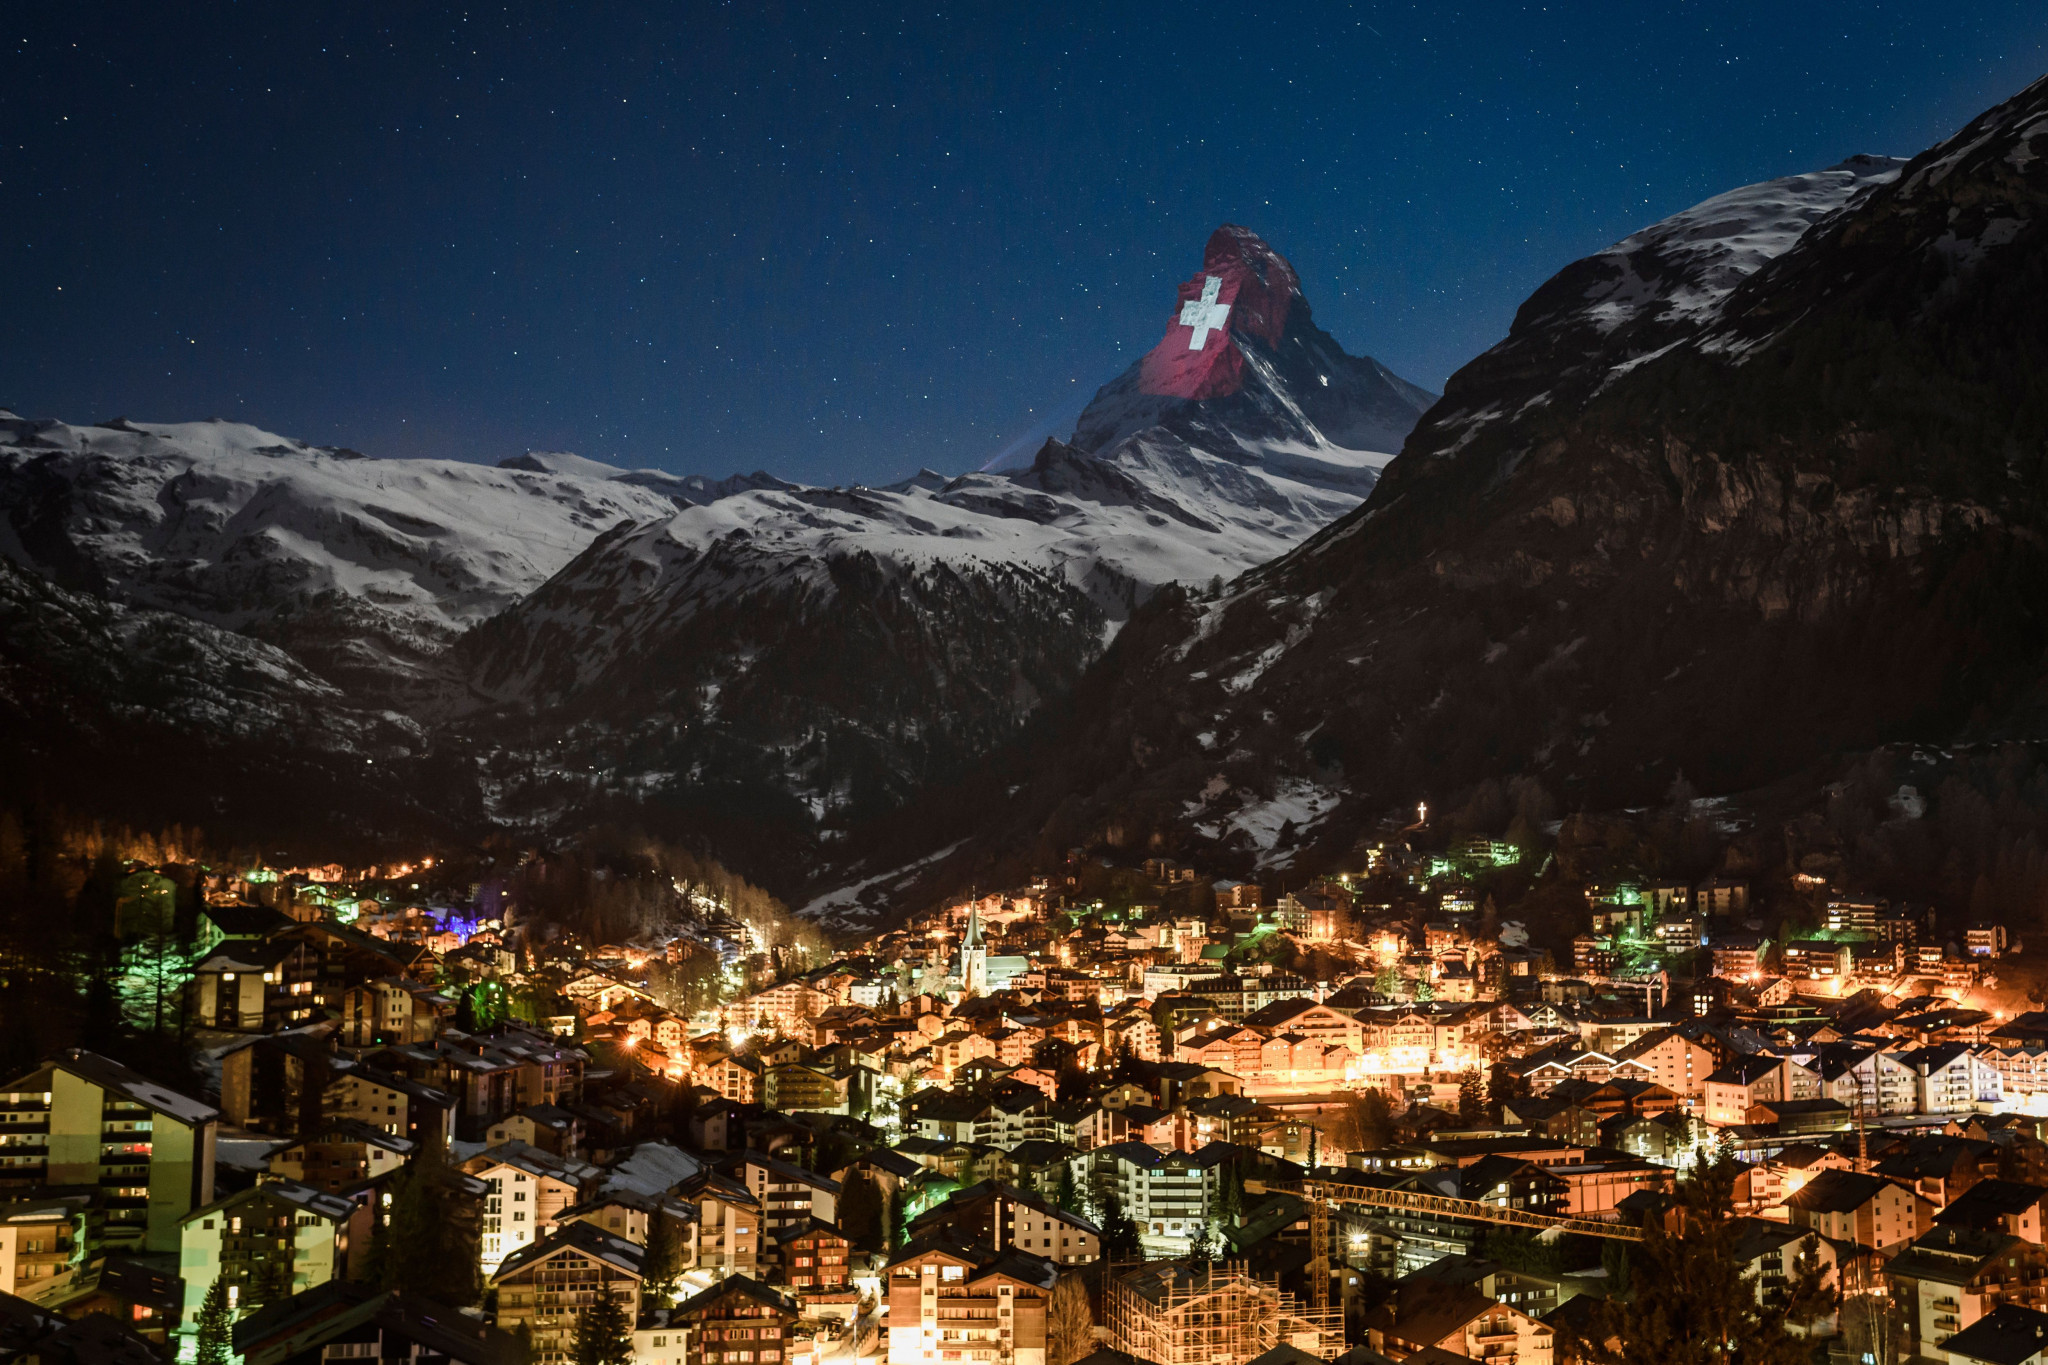 Zermatt wants to stage longest World Cup downhill race from 2022